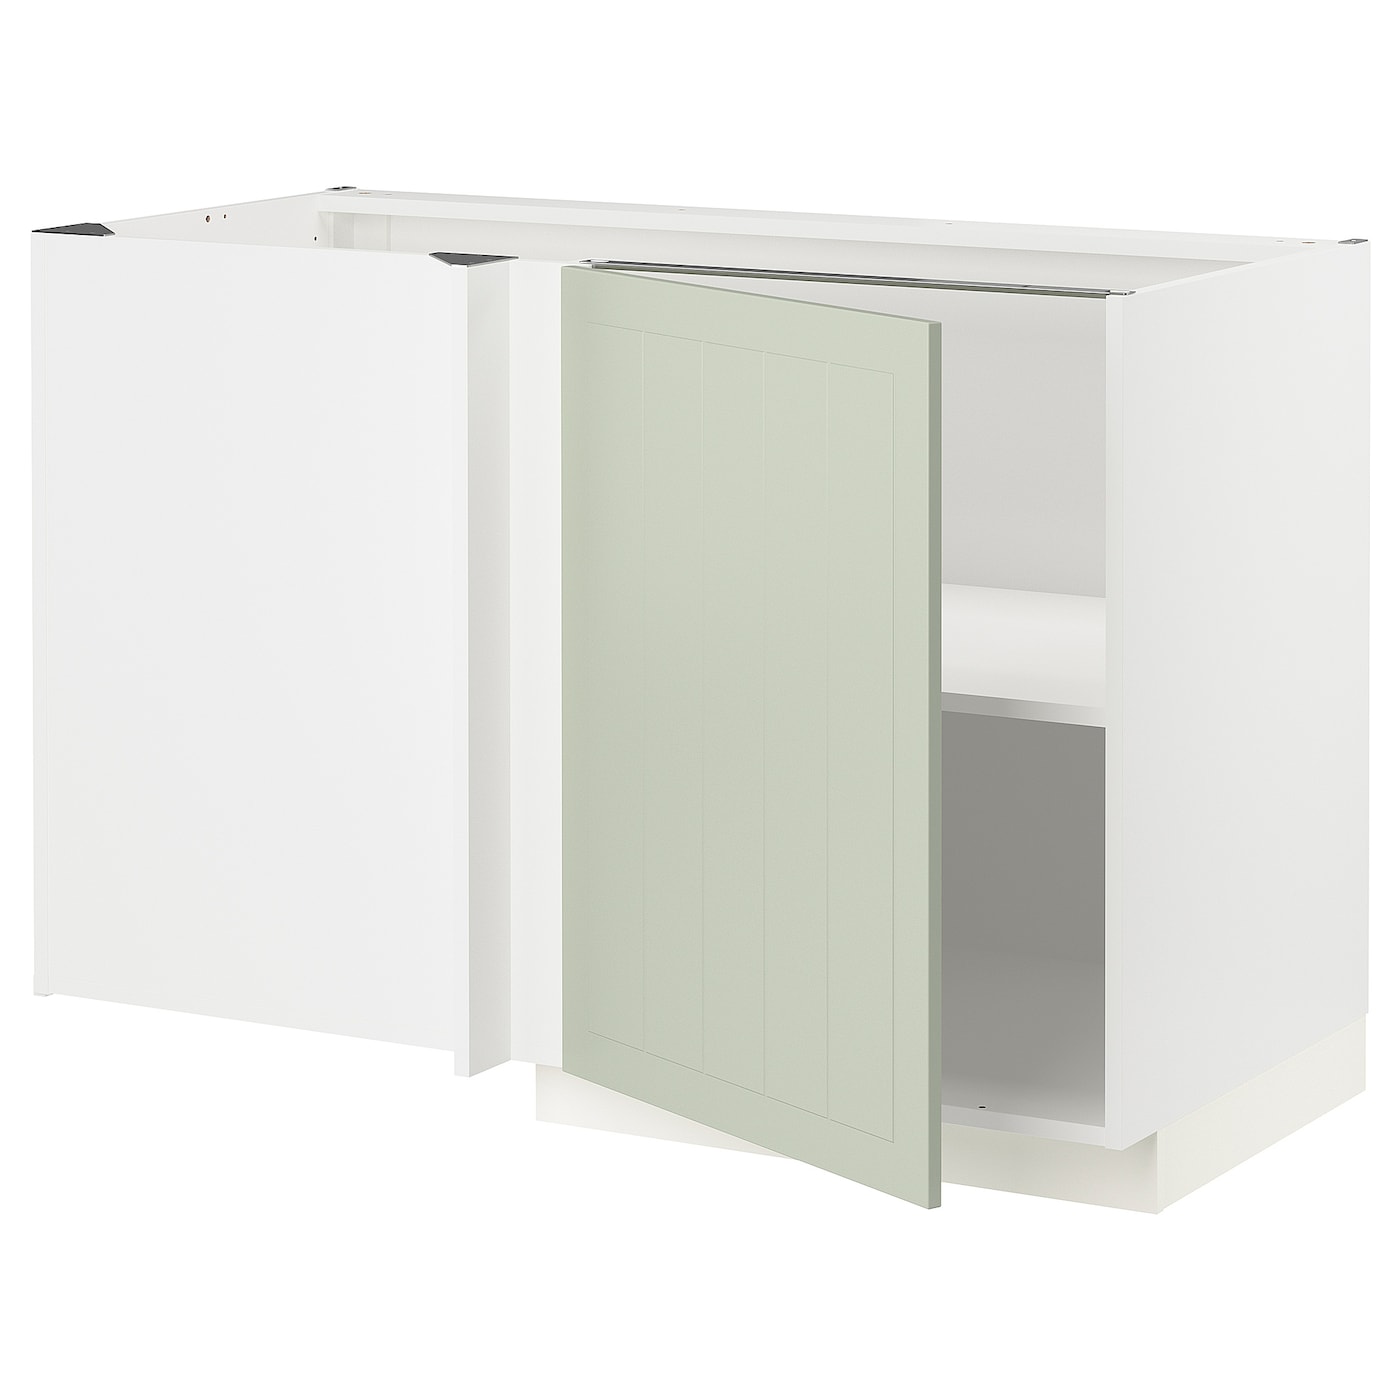 Напольный кухонный шкаф  - IKEA METOD, 88x62x127,5см, белый/светло-зеленый, МЕТОД ИКЕА